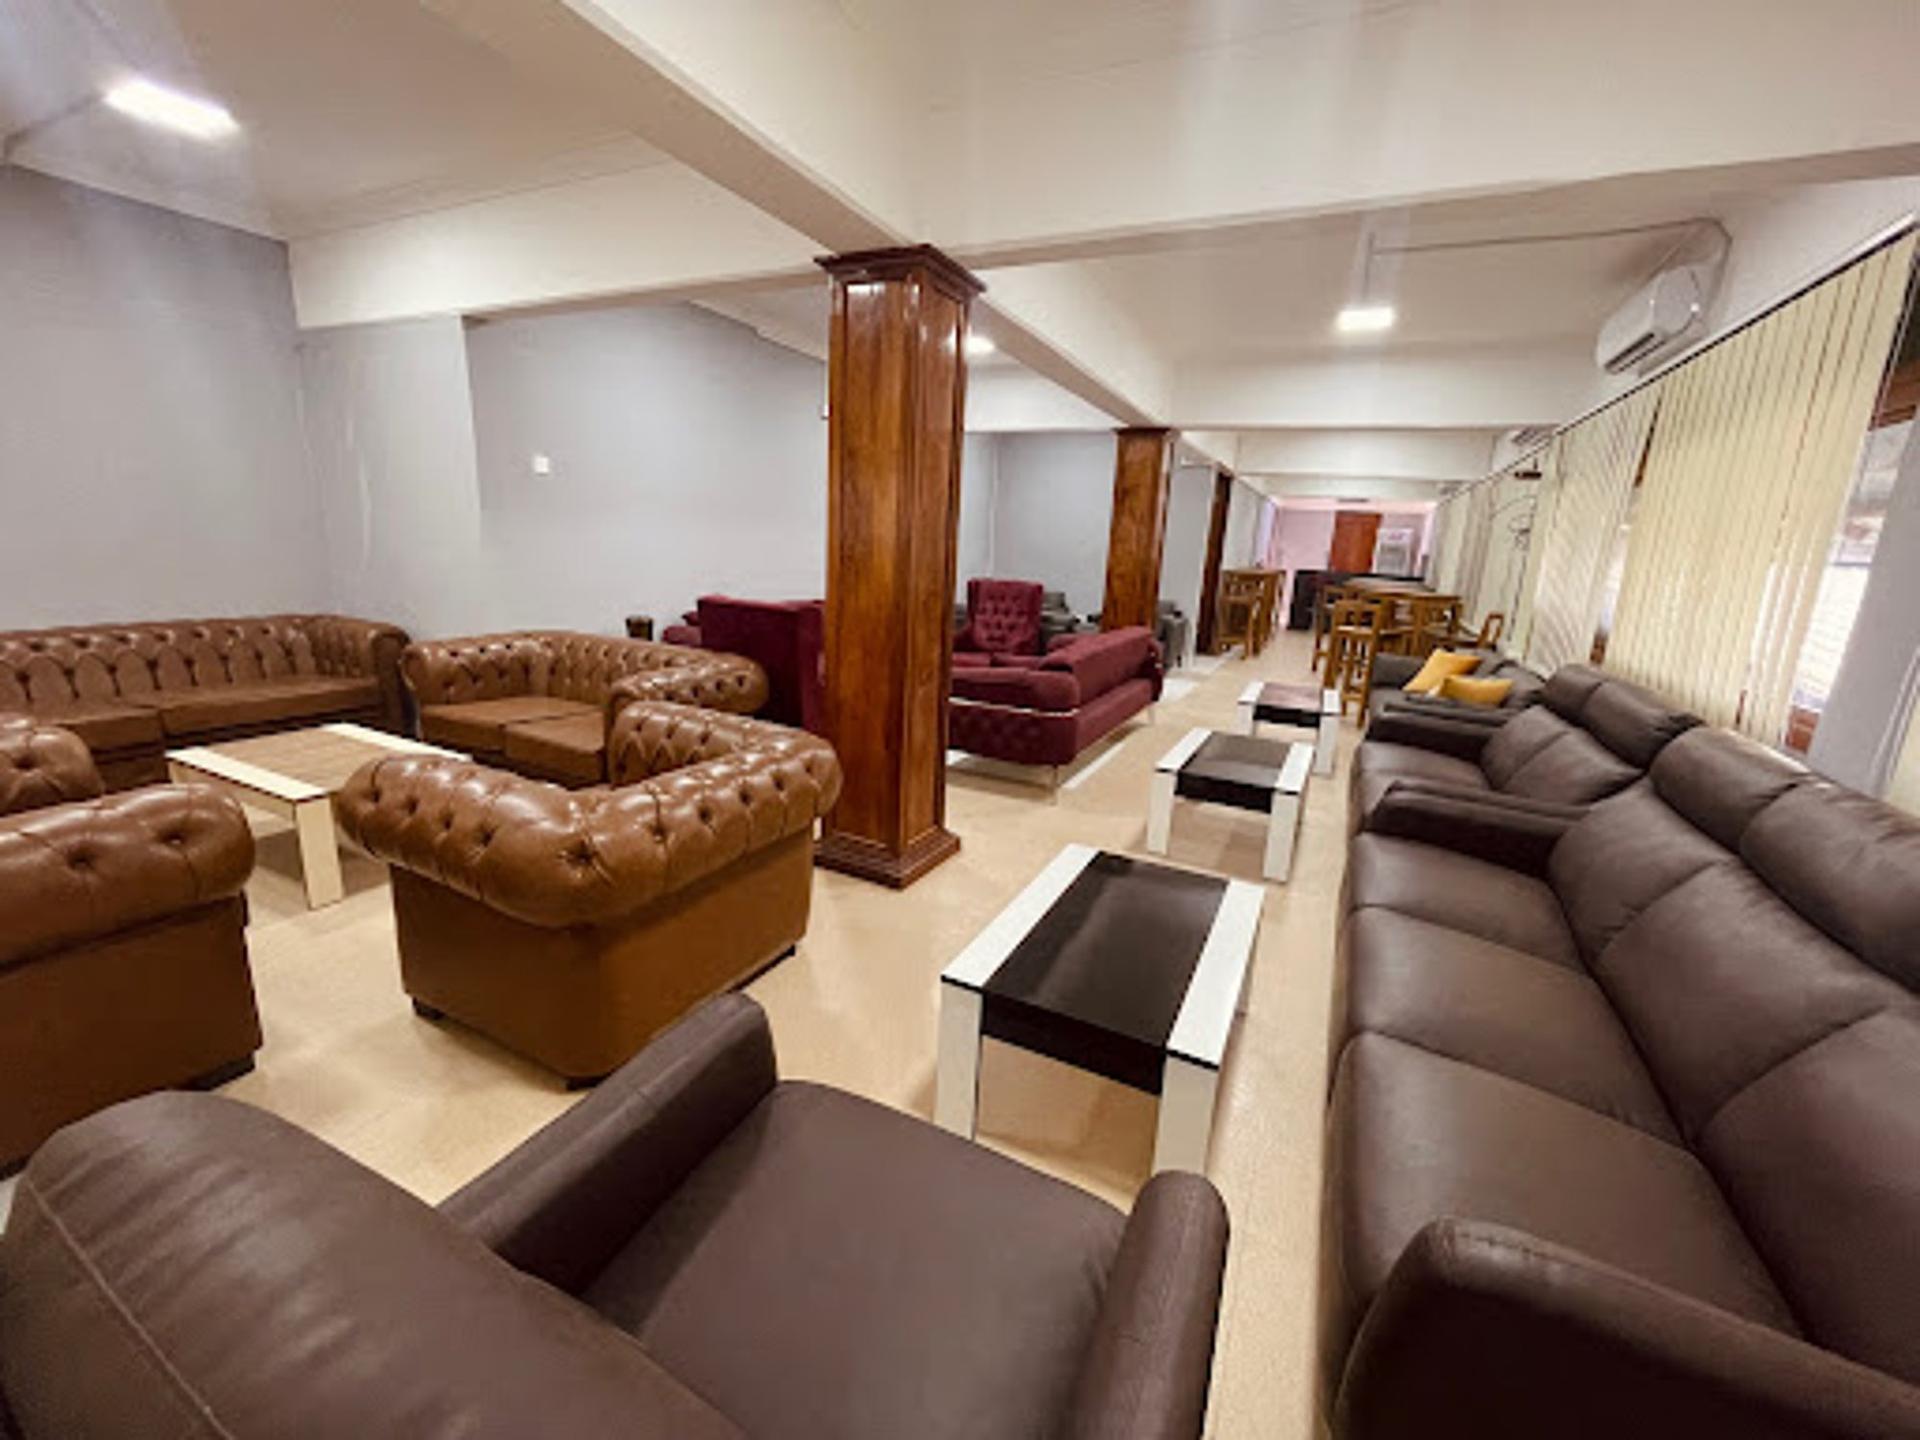 The Premium Lounge Zanzibar image 1 of 7